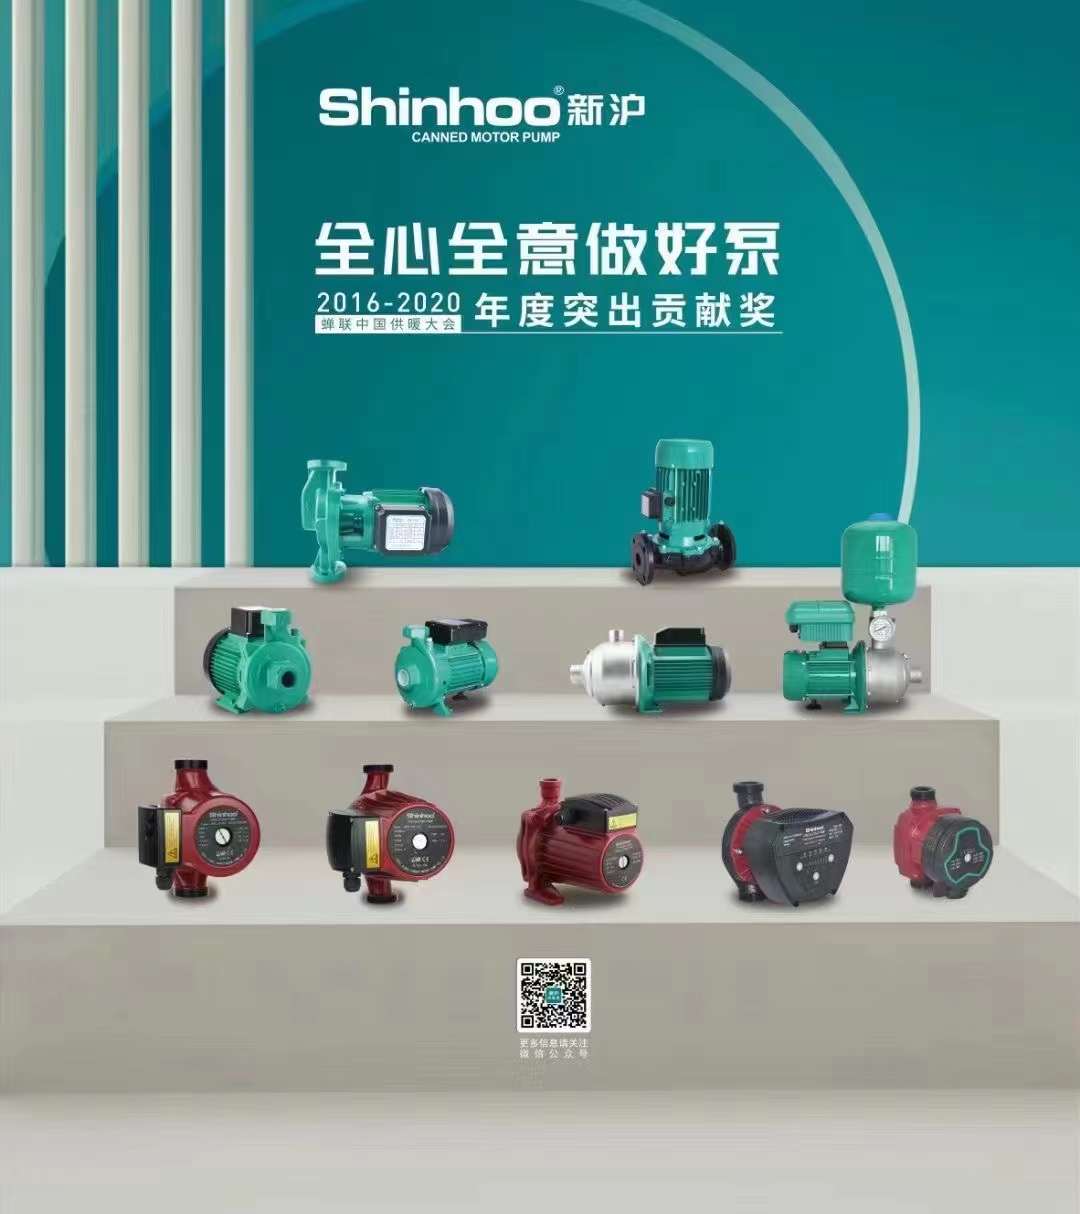 Shinhoo pump